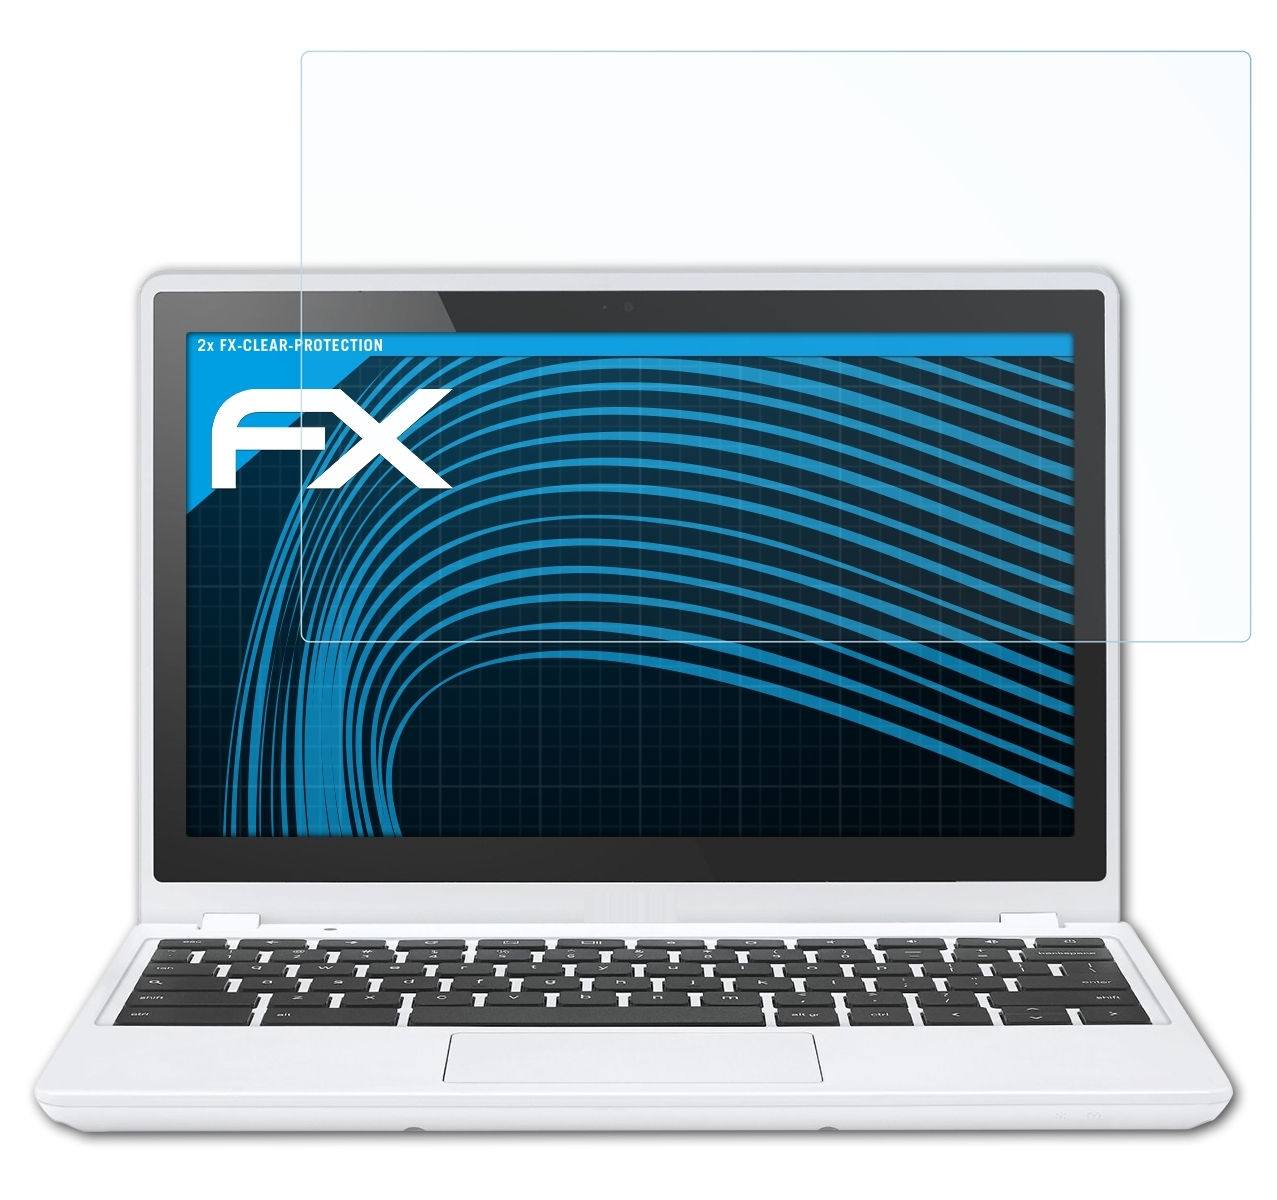 C720 FX-Clear Google Displayschutz(für (11.6 Chromebook 2x Inch) ATFOLIX (Acer))